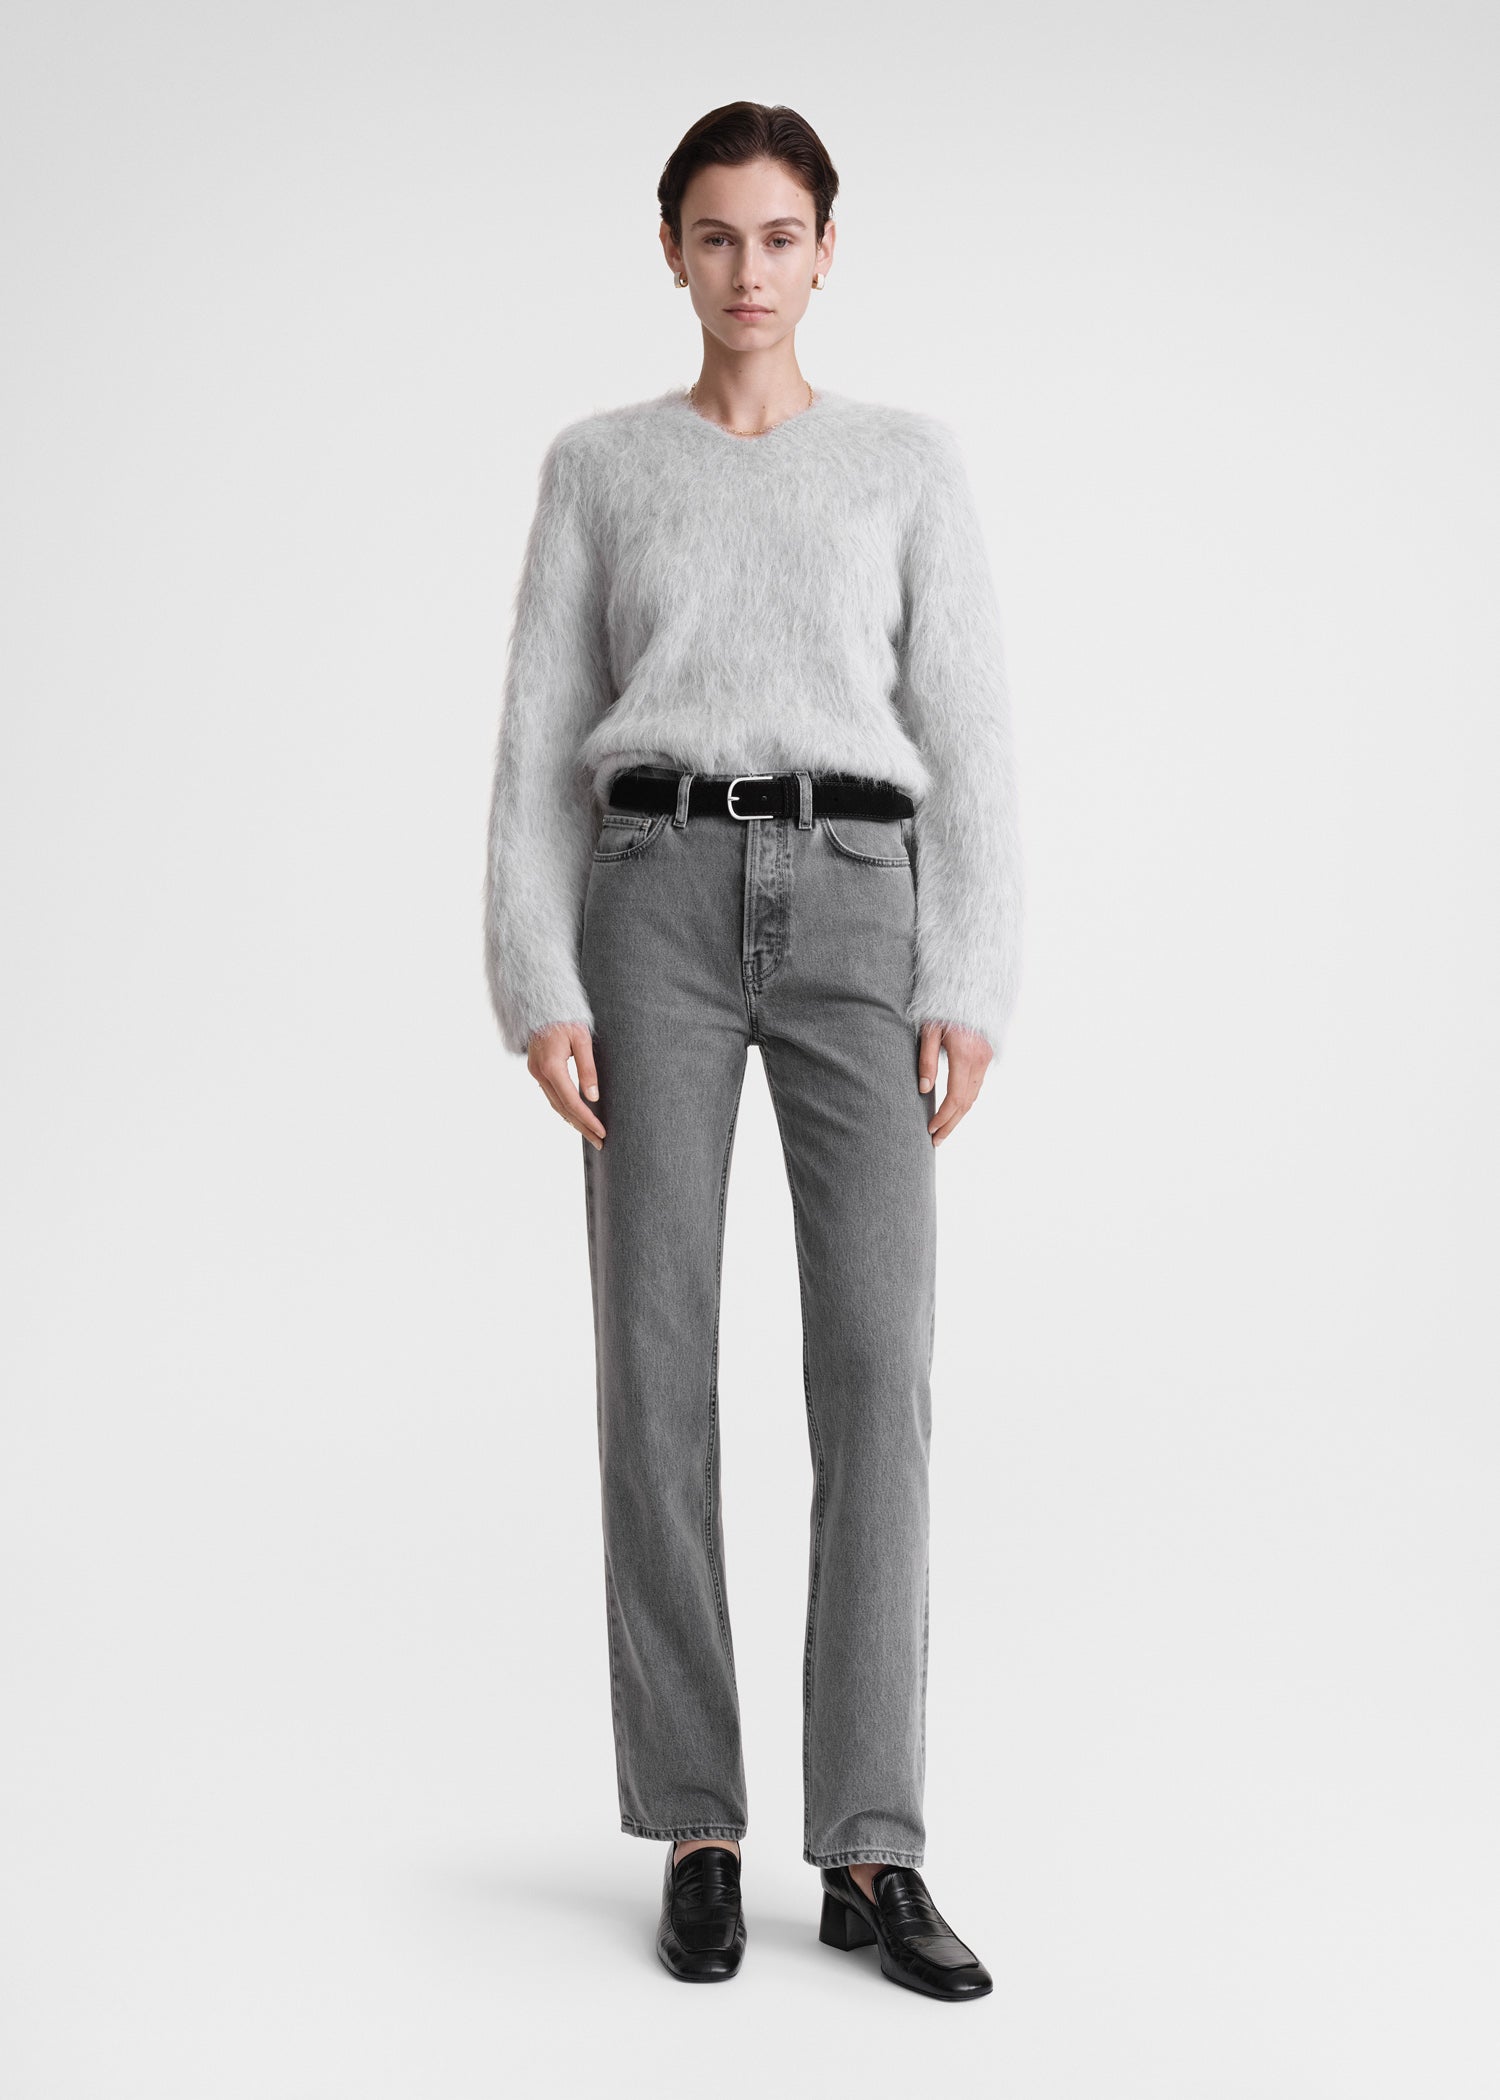 Women's Designer Knitwear, Cardigans & Sweaters – TOTEME